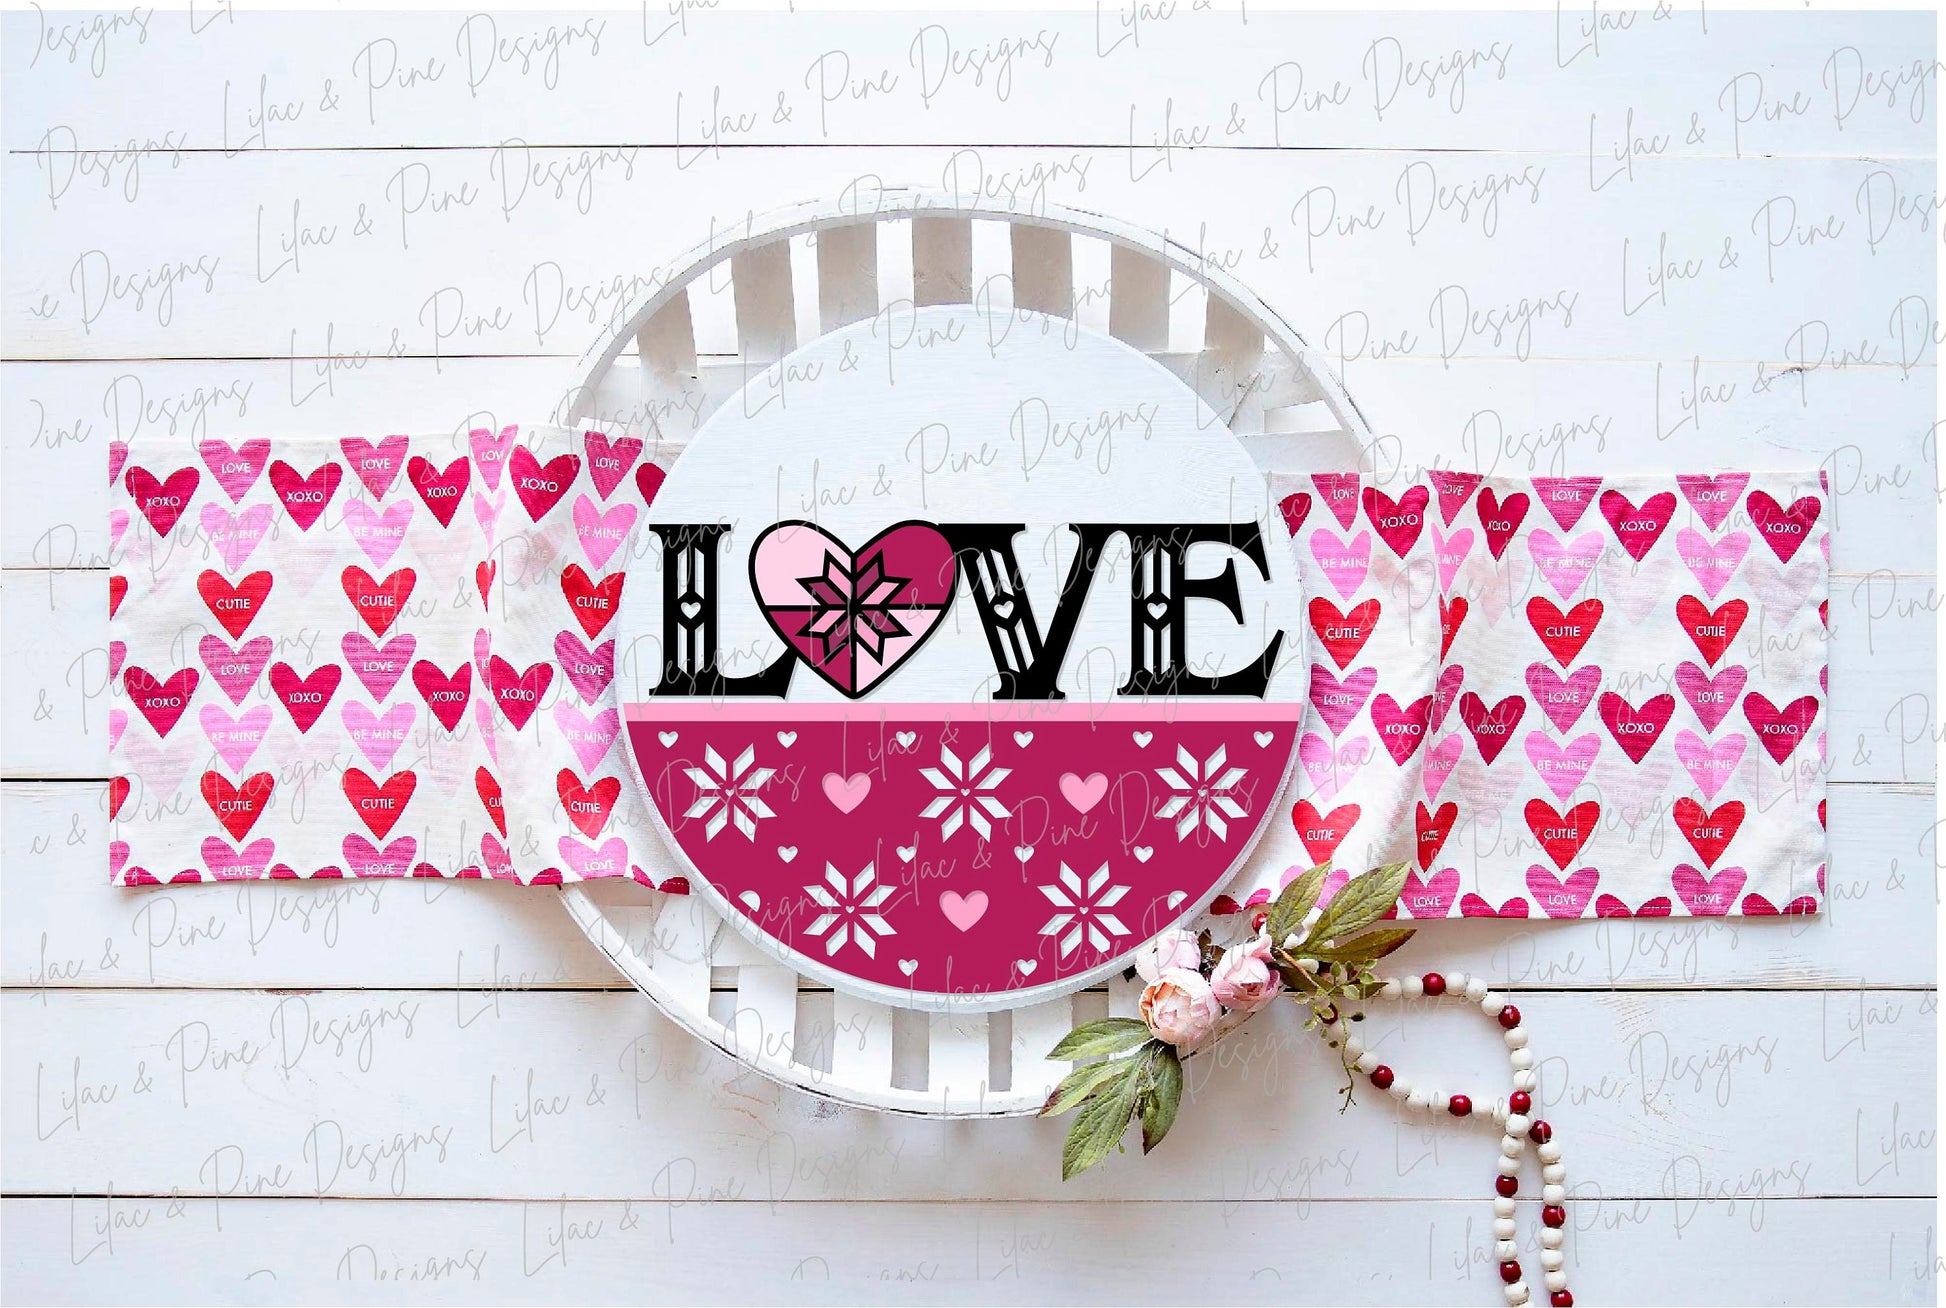 love quilt door hanger SVG, Valentine welcome sign, quilt heart round sign, Valentines Day decor, Glowforge SVG, laser cut file